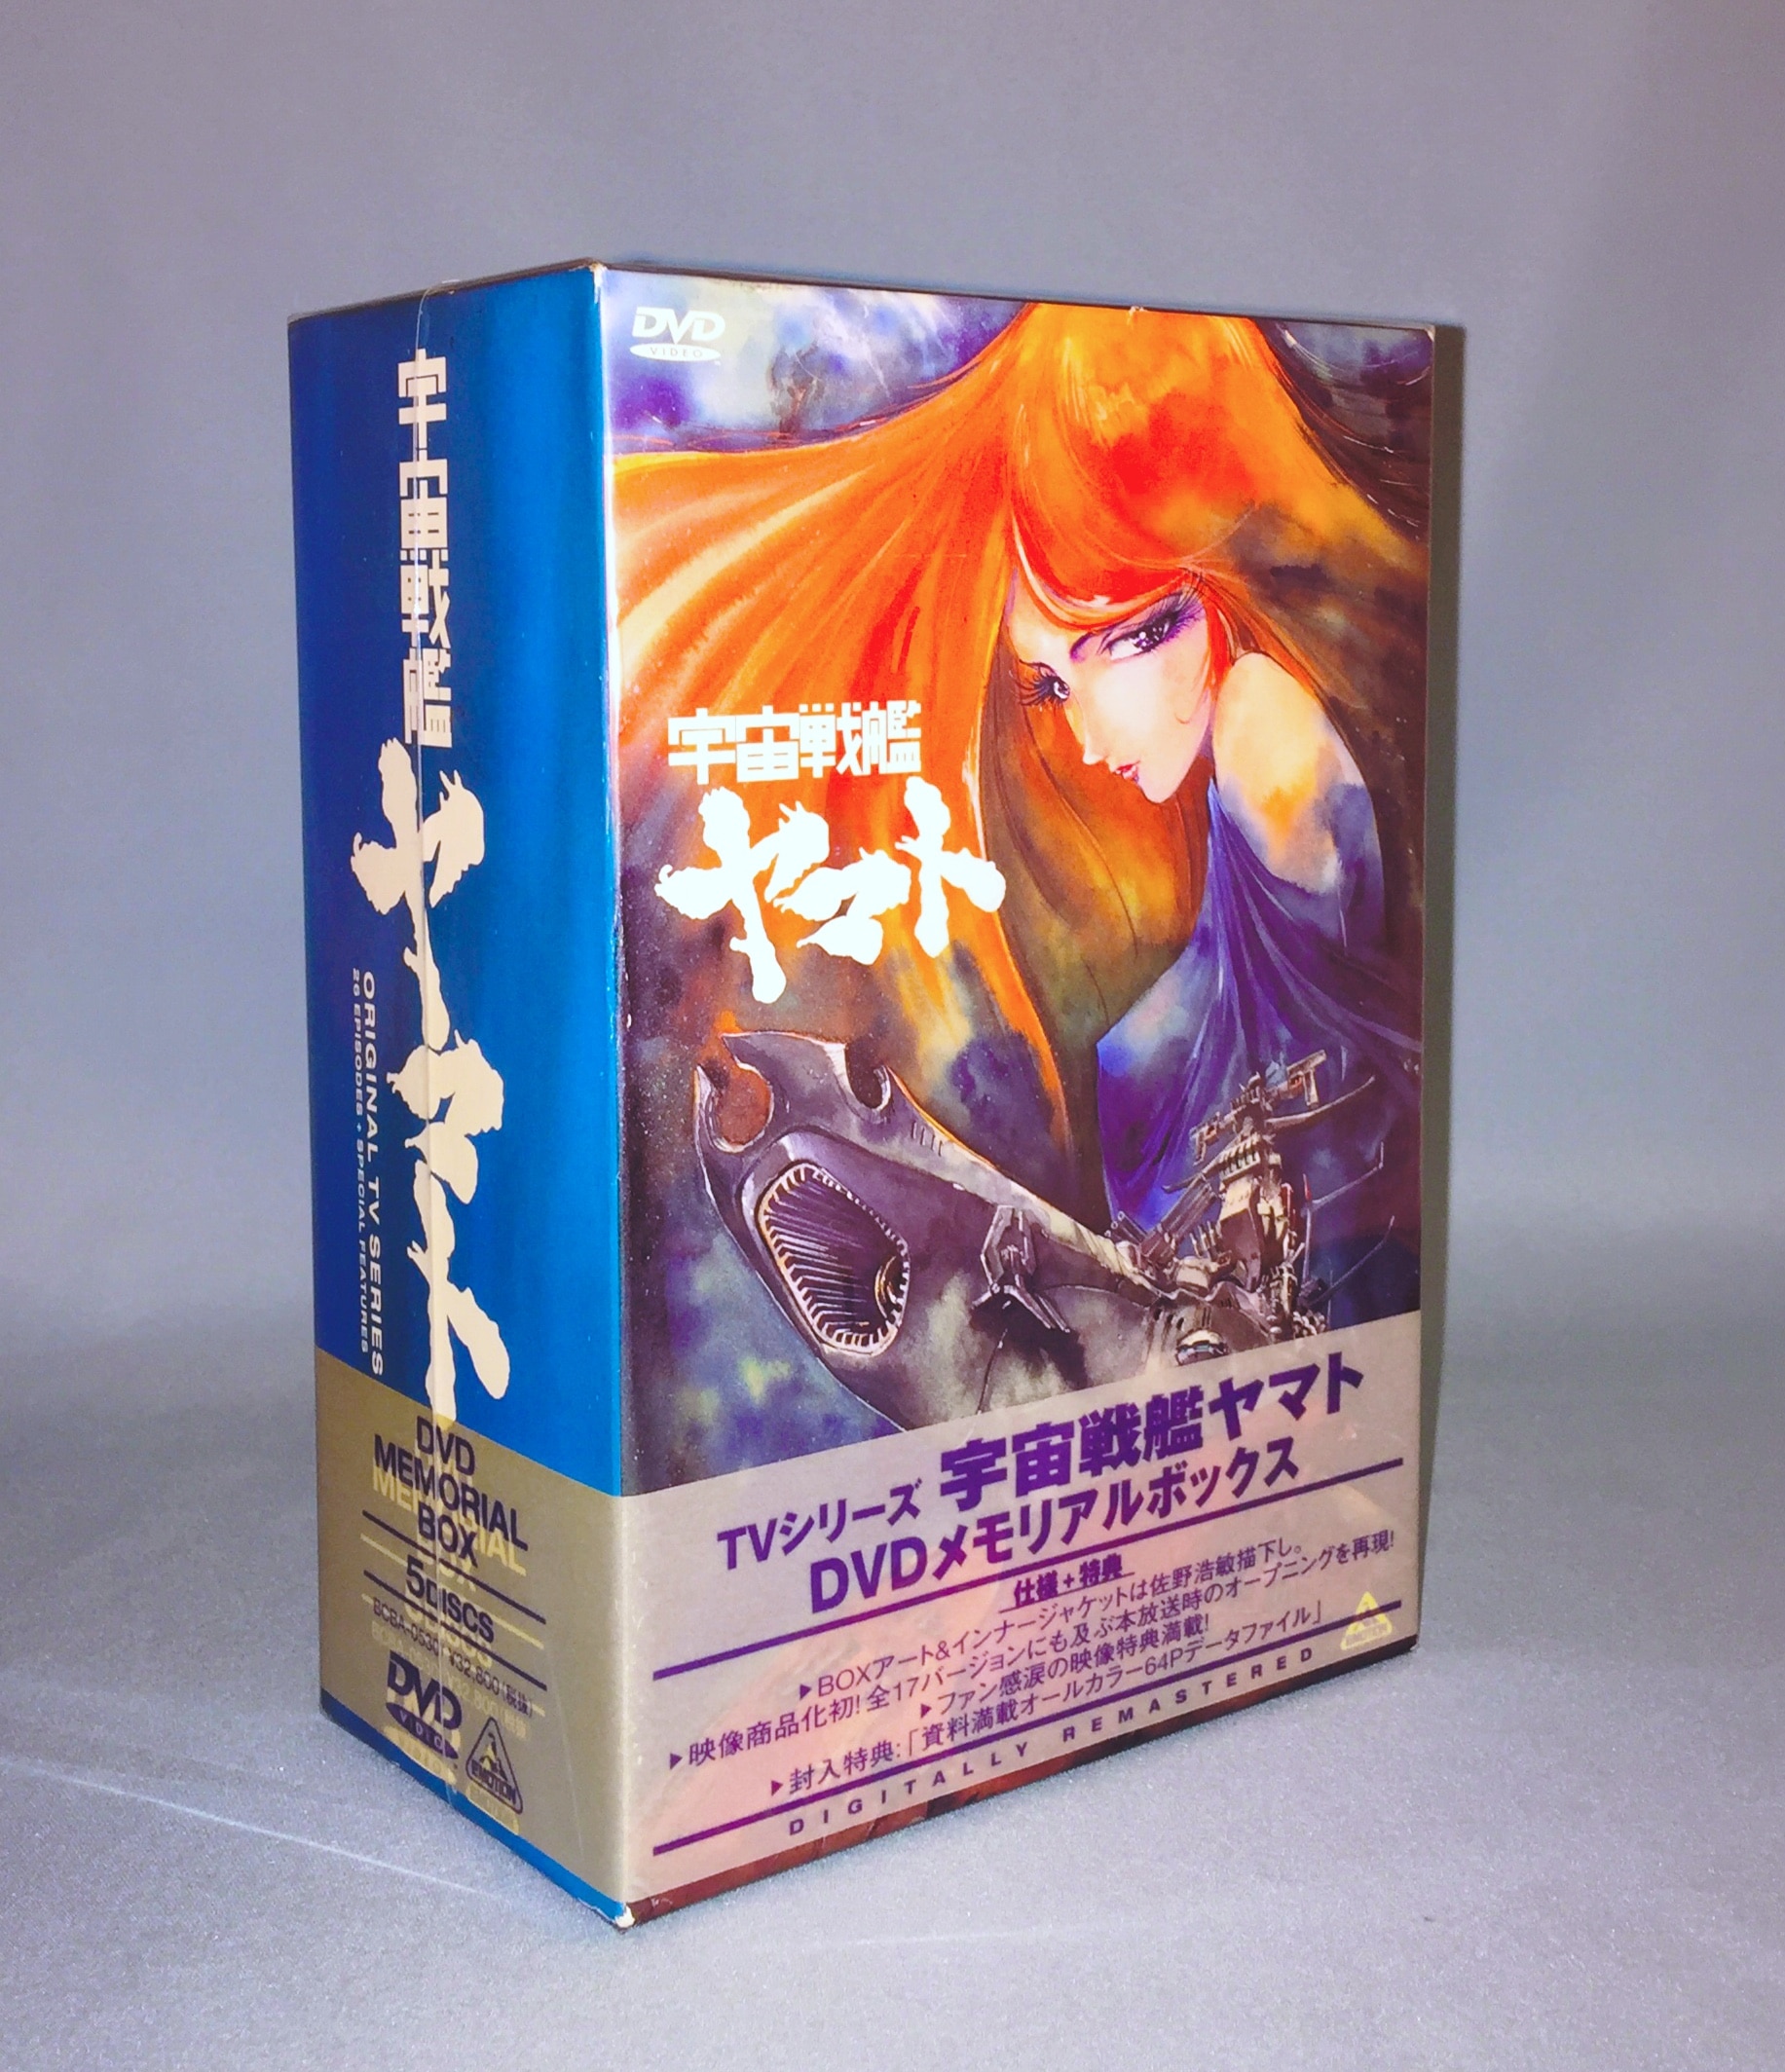 宇宙戦艦ヤマト? DVD MEMORIAL BOX - アニメーション